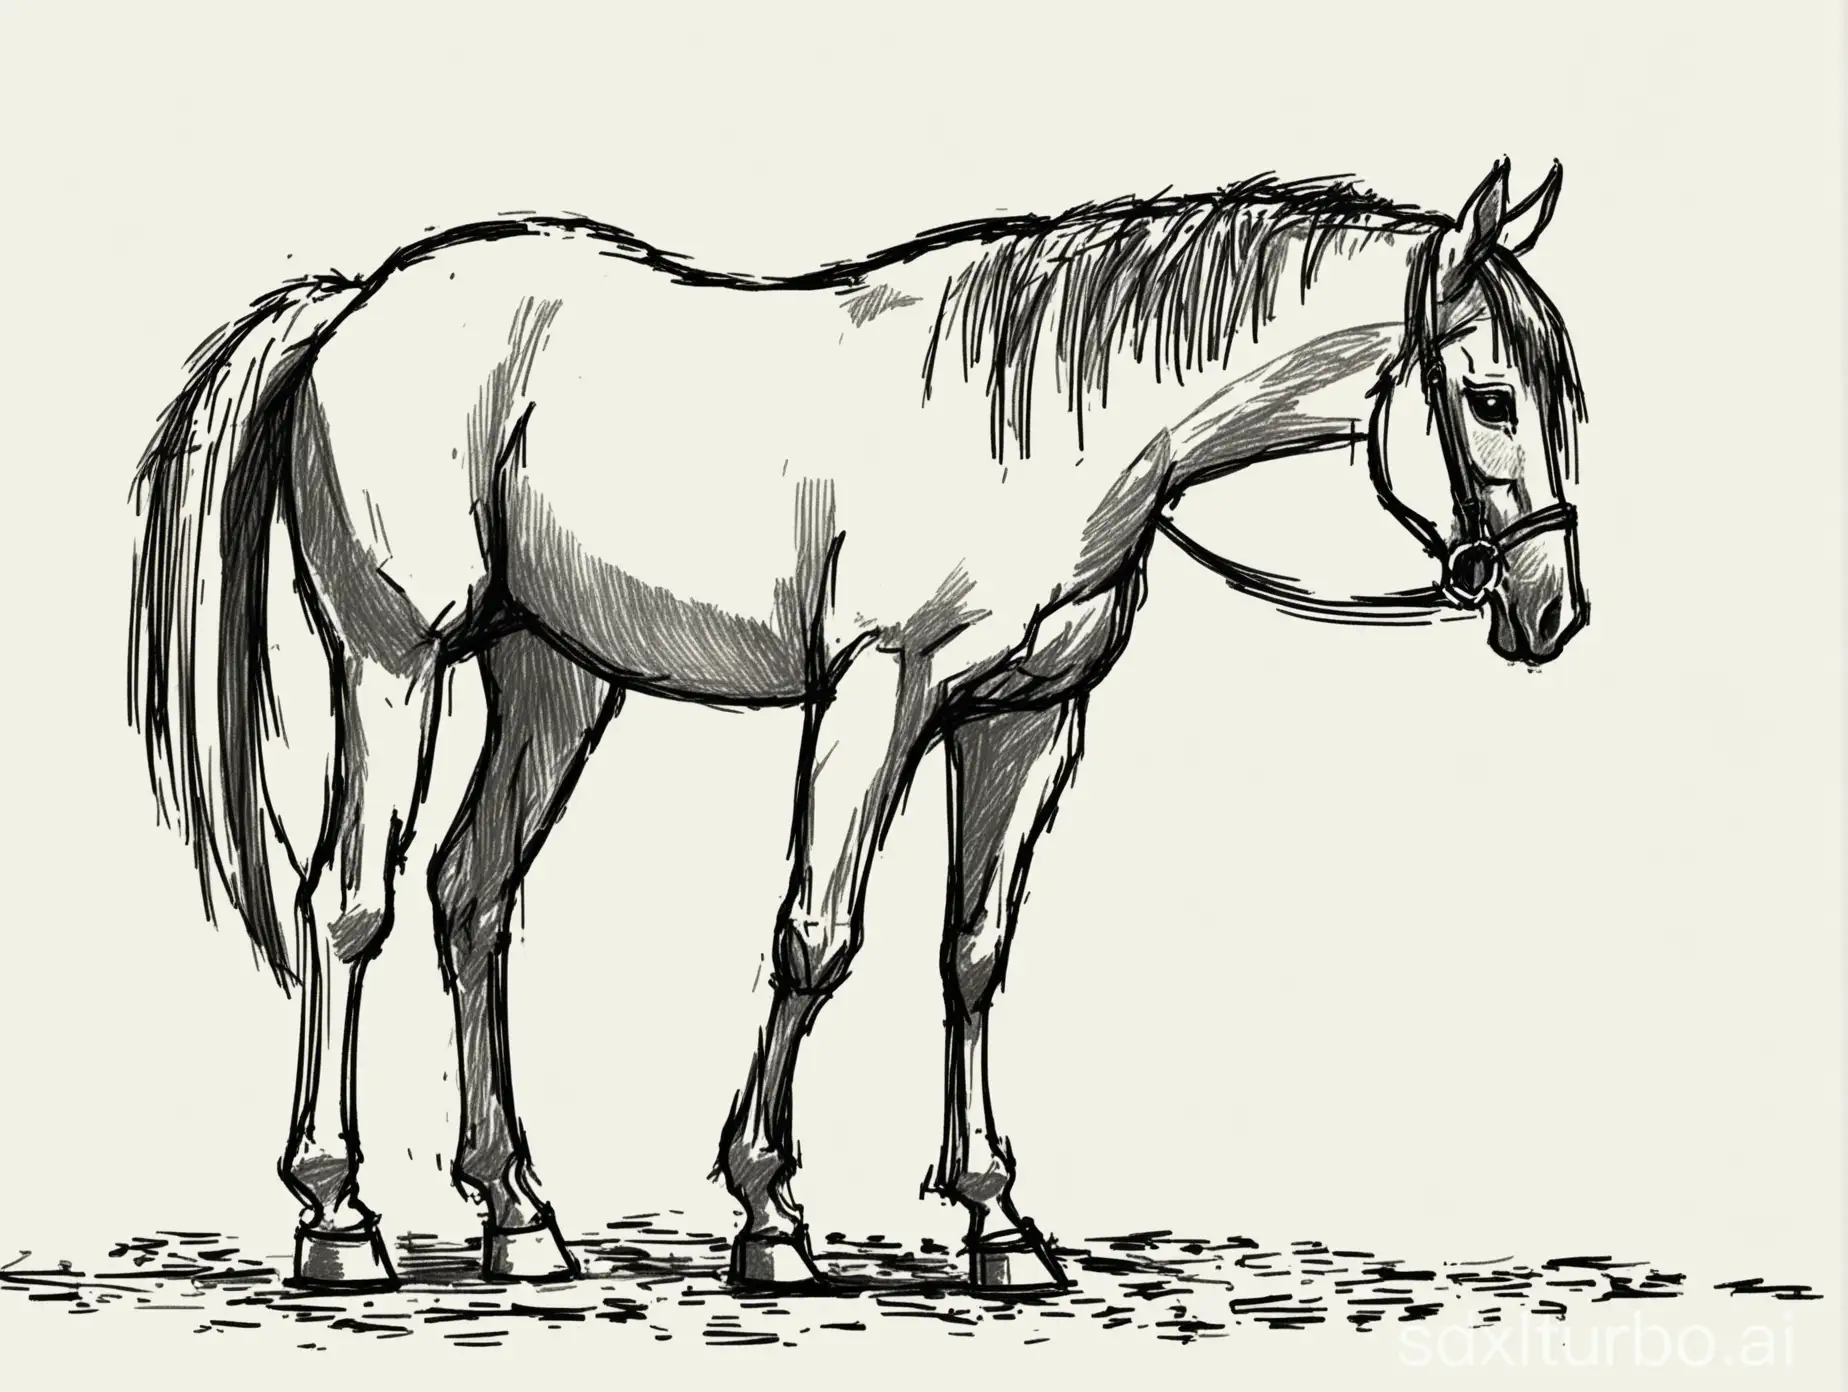 нарисуй лошадь, которая стоит на земле с поднятой головой, в полный рост, боком. одно копыто поднято. стиль рисования - быстрый набросок